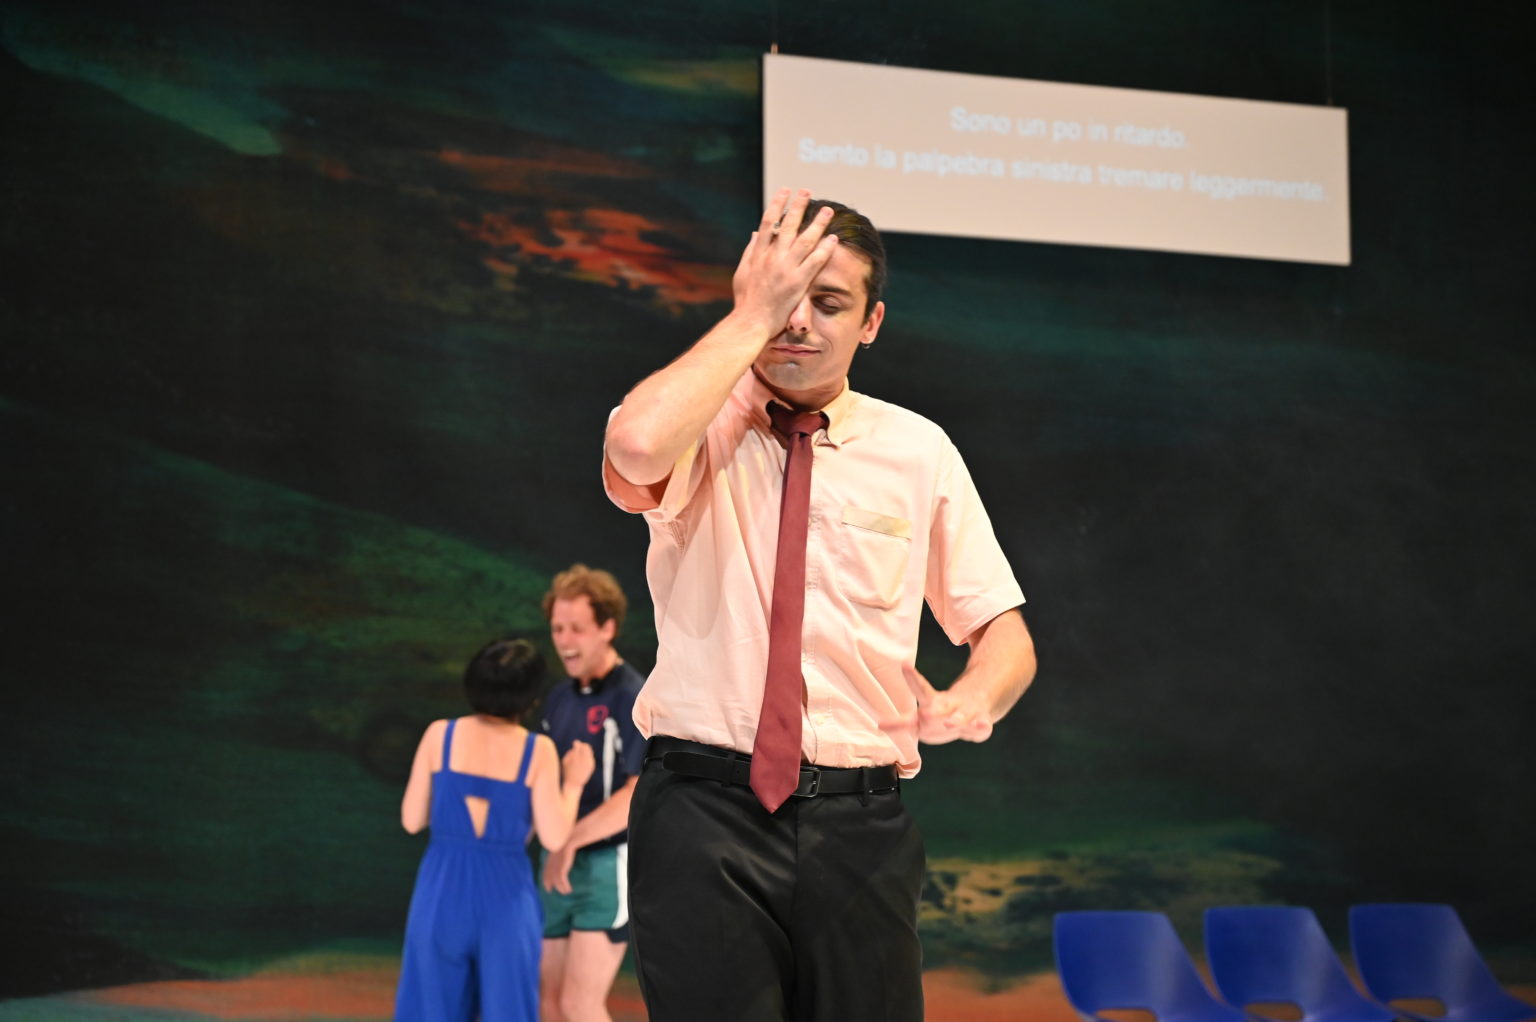 Photo du spectacle "Una foresta" où l'on voit un comédien en avant-plan qui se prend le visage avec sa main, et en arrière-plan deux comédiens discutent